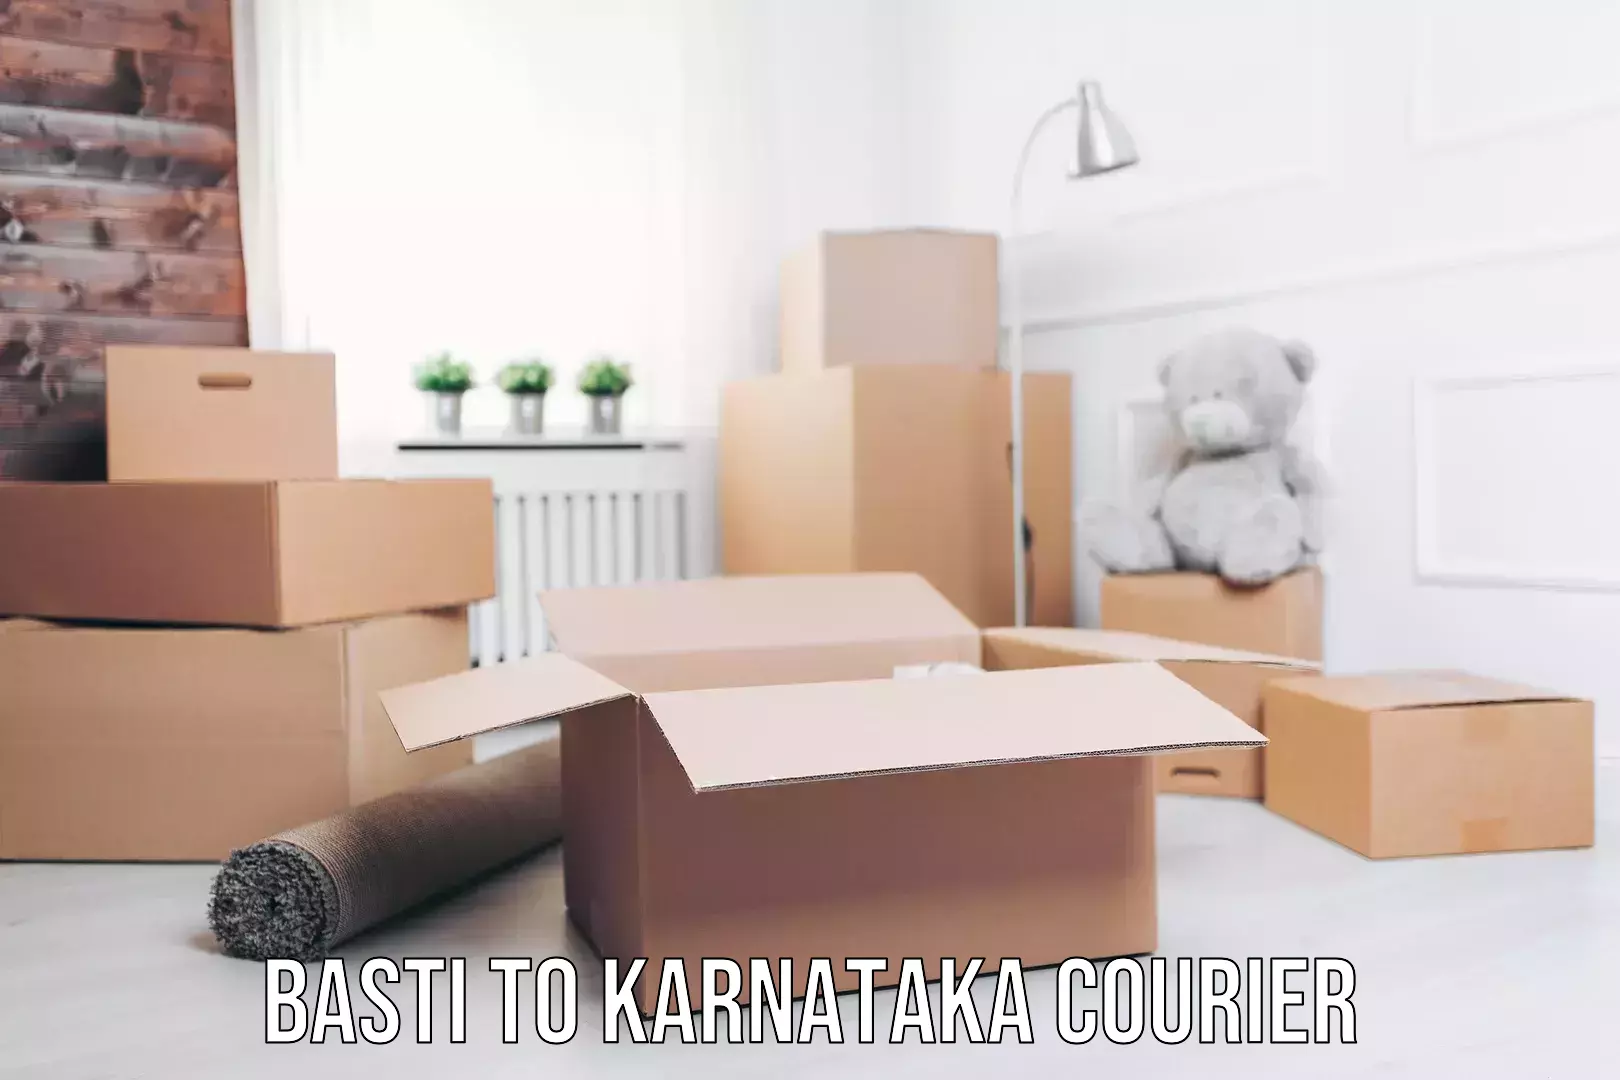 Express delivery capabilities Basti to Karnataka